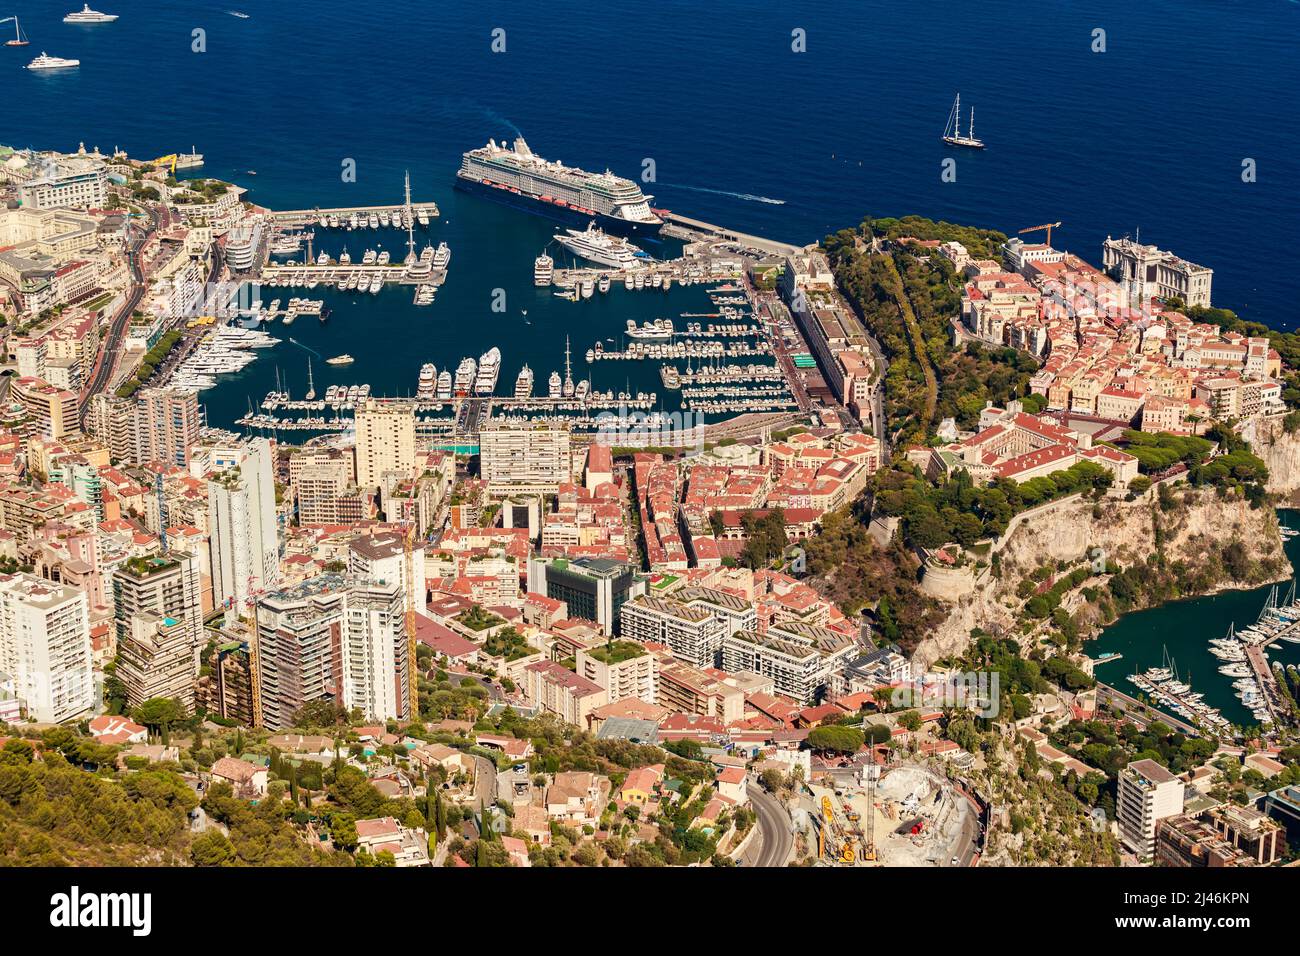 Vista aerea del porto di Ercole di Monaco al tramonto, Monte-Carlo, enorme nave da crociera è ormeggiata nel porto turistico, vista della vita della città dalla montagna la Turbie, molto Foto Stock